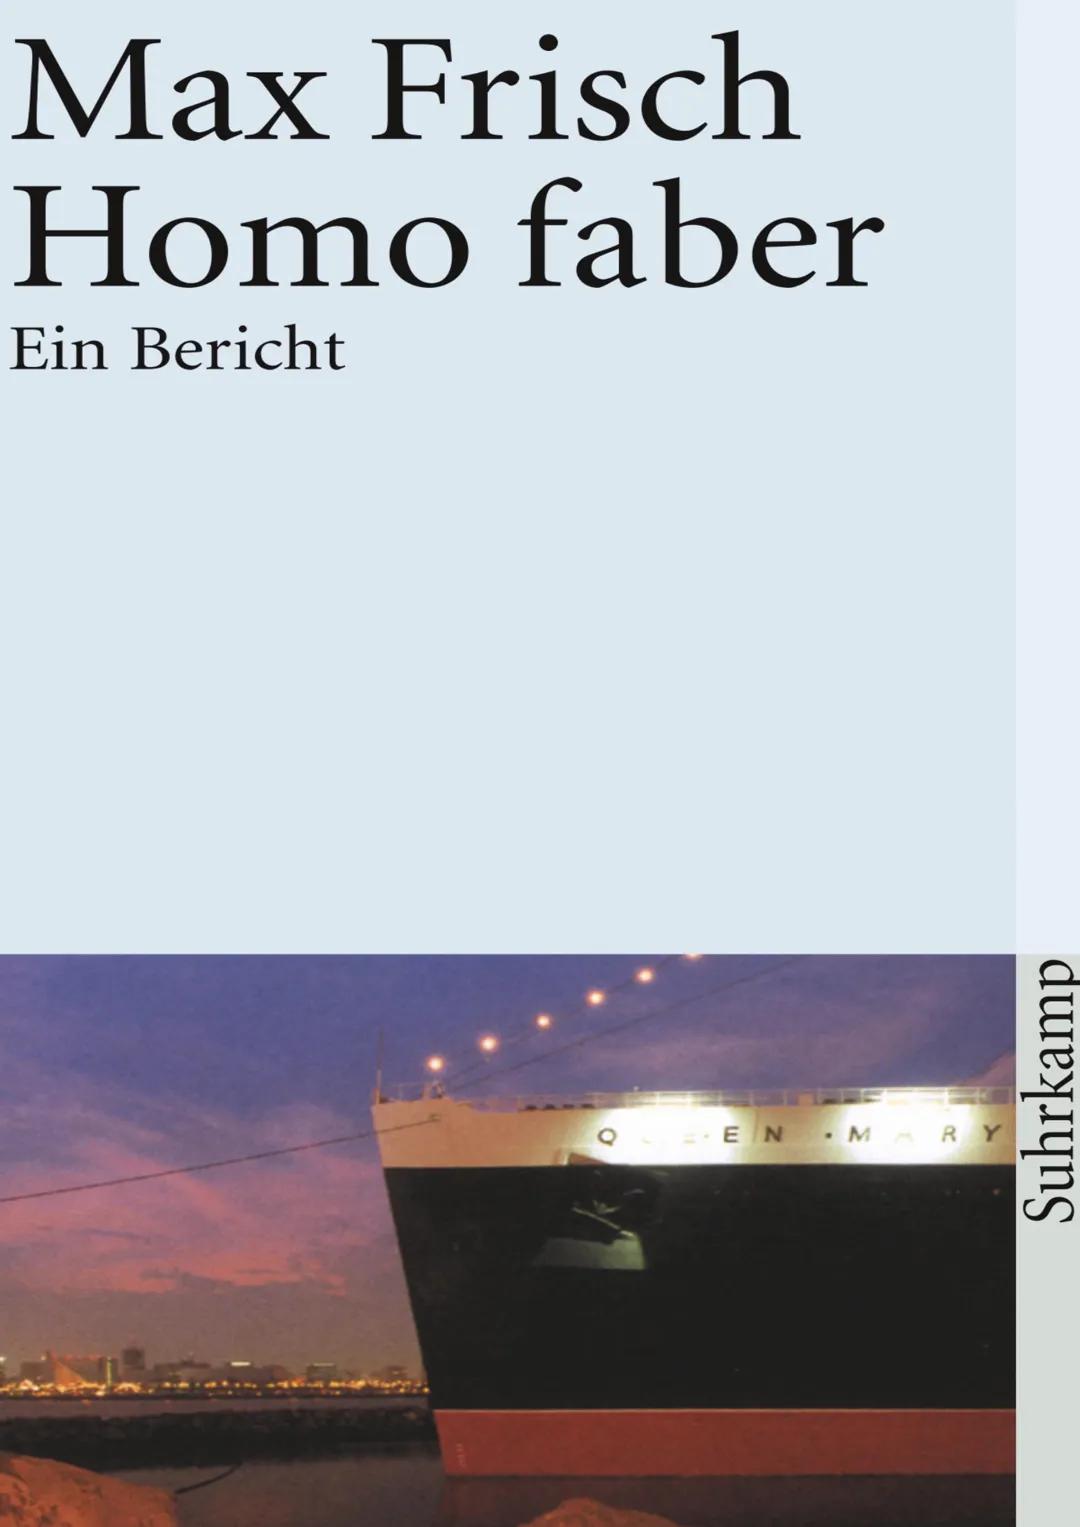 Max Frisch
Homo faber
Ein Bericht
ΕΝ
MARY
Suhrkamp Homo Faber
Walter Faber
• Beruf: Ingenieur bei der UNESCO, Techniker, technische Hilfe fü